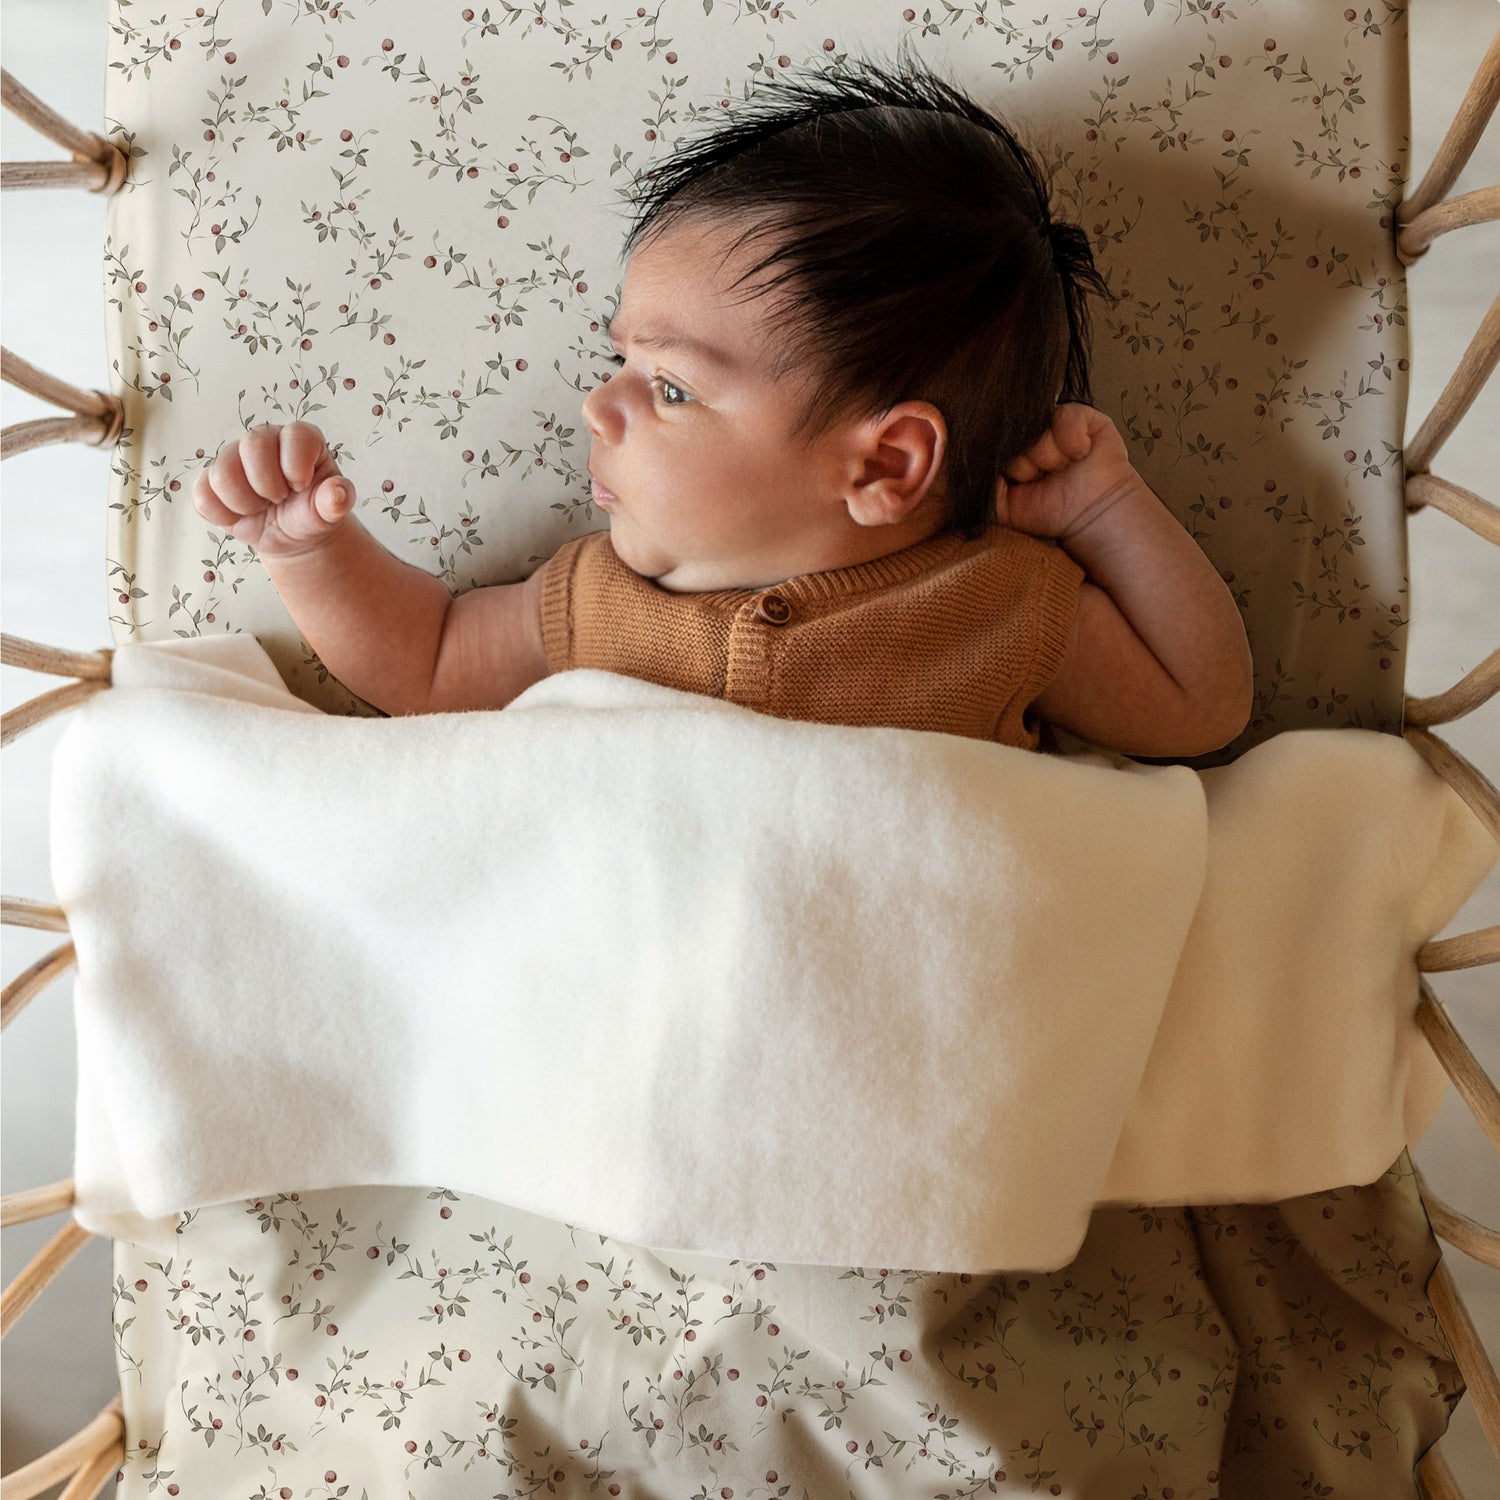 Een vredige pasgeborene met plukjes donker haar ligt op een comfortabele Yumi Baby Ledikantdeken Appeltakken, knus in een wiegje in boho-stijl, nieuwsgierig naar de wereld om zich heen kijkend.